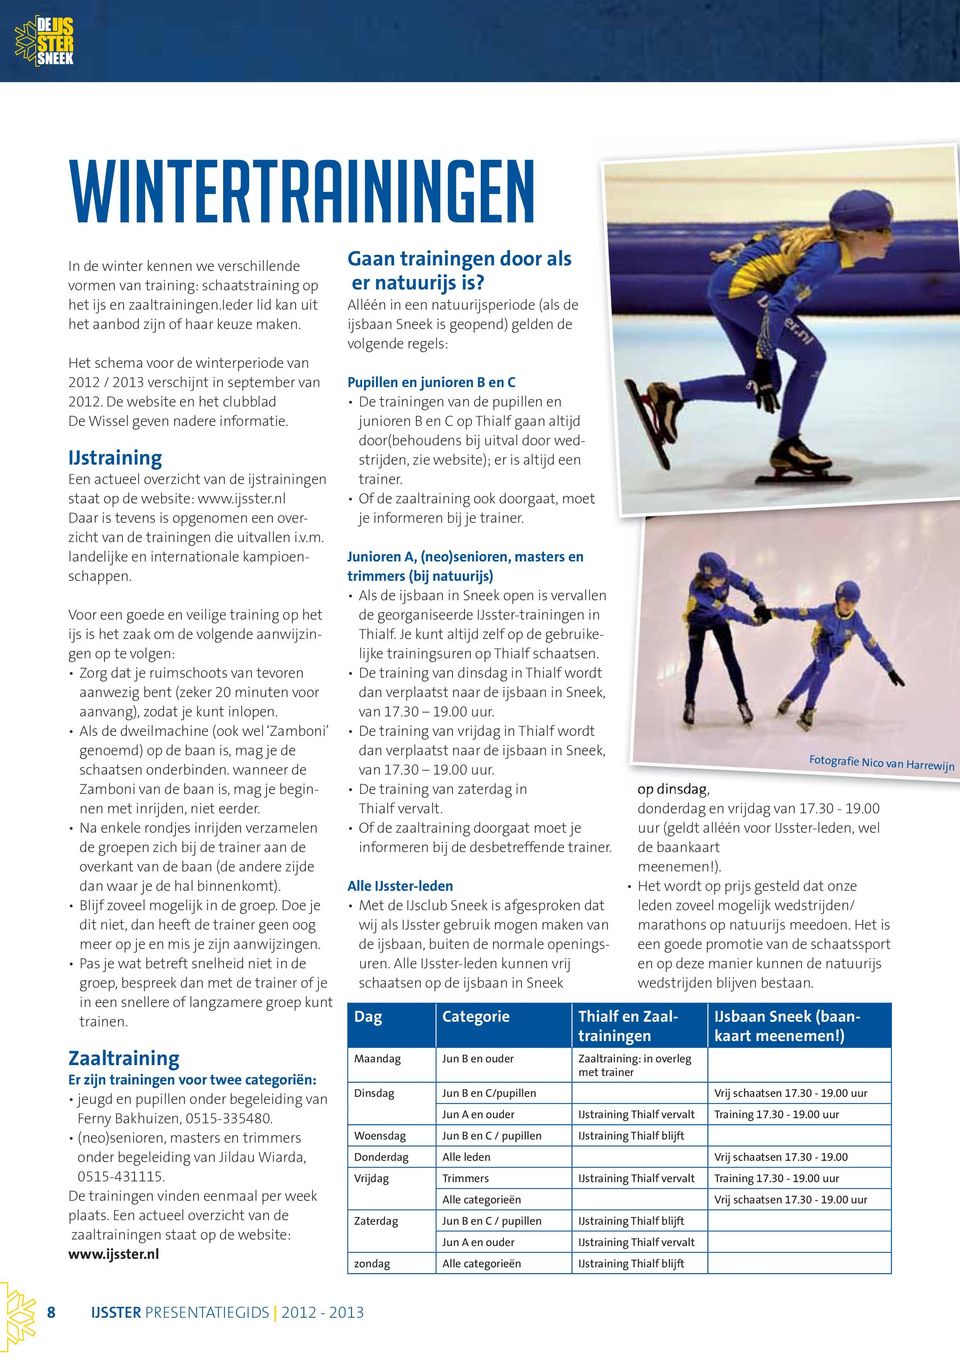 IJstraining Een actueel overzicht van de ijstrainingen staat op de website: www.ijsster.nl Daar is tevens is opgenomen een overzicht van de trainingen die uitvallen i.v.m. landelijke en internationale kampioenschappen.